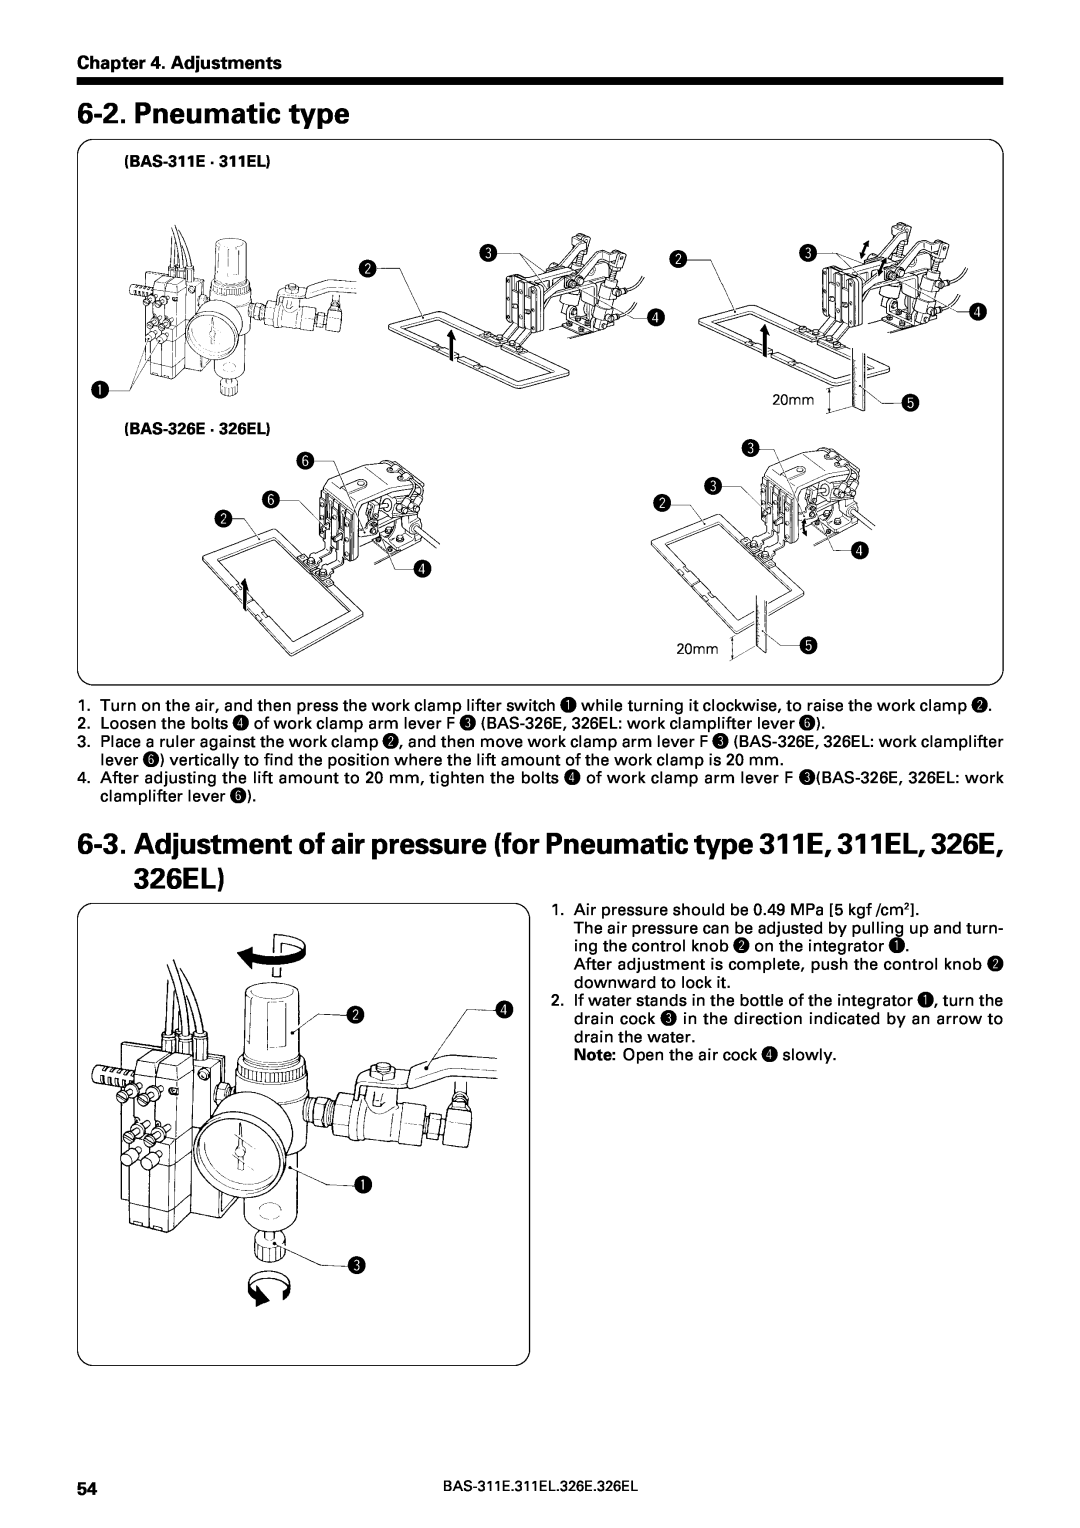 Brother service manual Pneumatic type, Adjustments, rr q, yw w r, BAS-311E · 311EL, BAS-326E · 326EL 